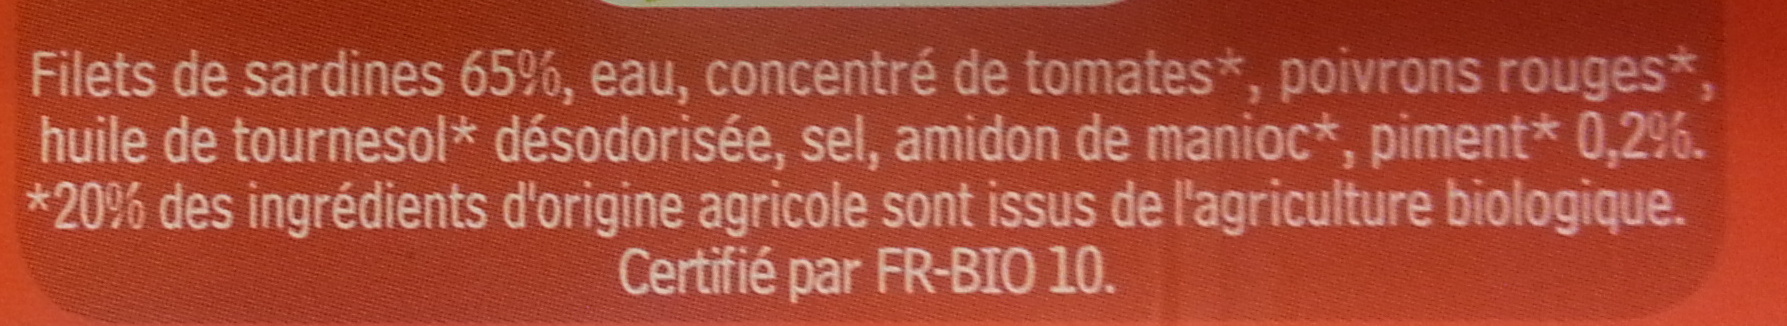 Filets de Sardines de Bretagne, sauce pimentée Bio - Ingredients - fr